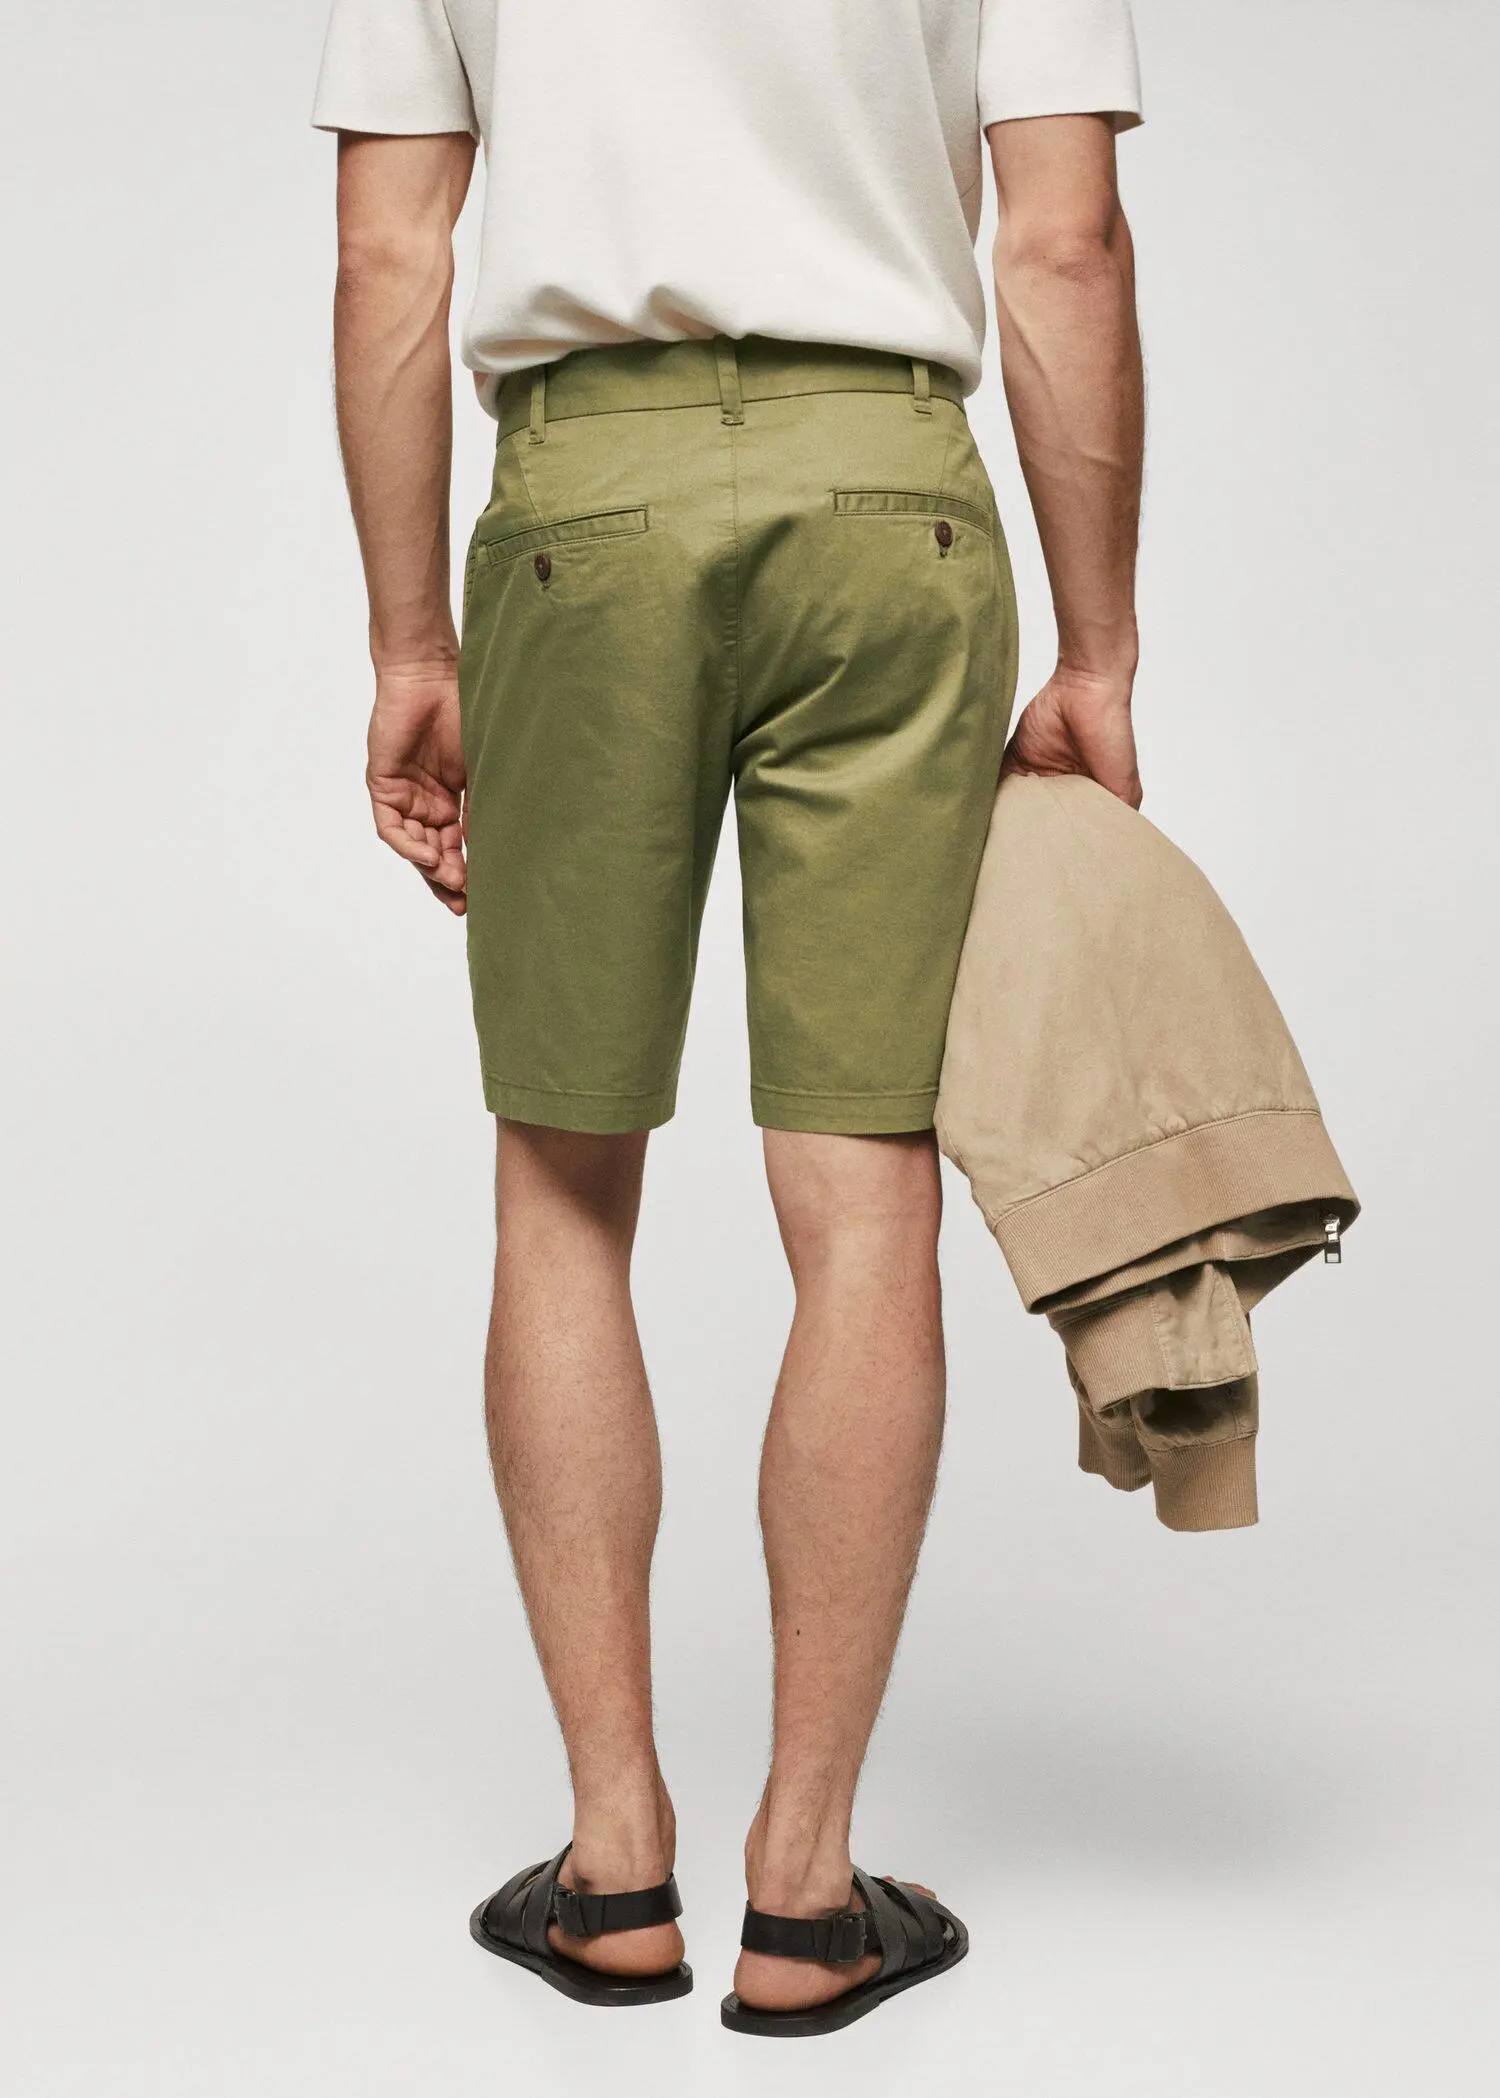 Mango Chino Bermuda shorts. a man wearing a pair of green shorts and holding a jacket. 